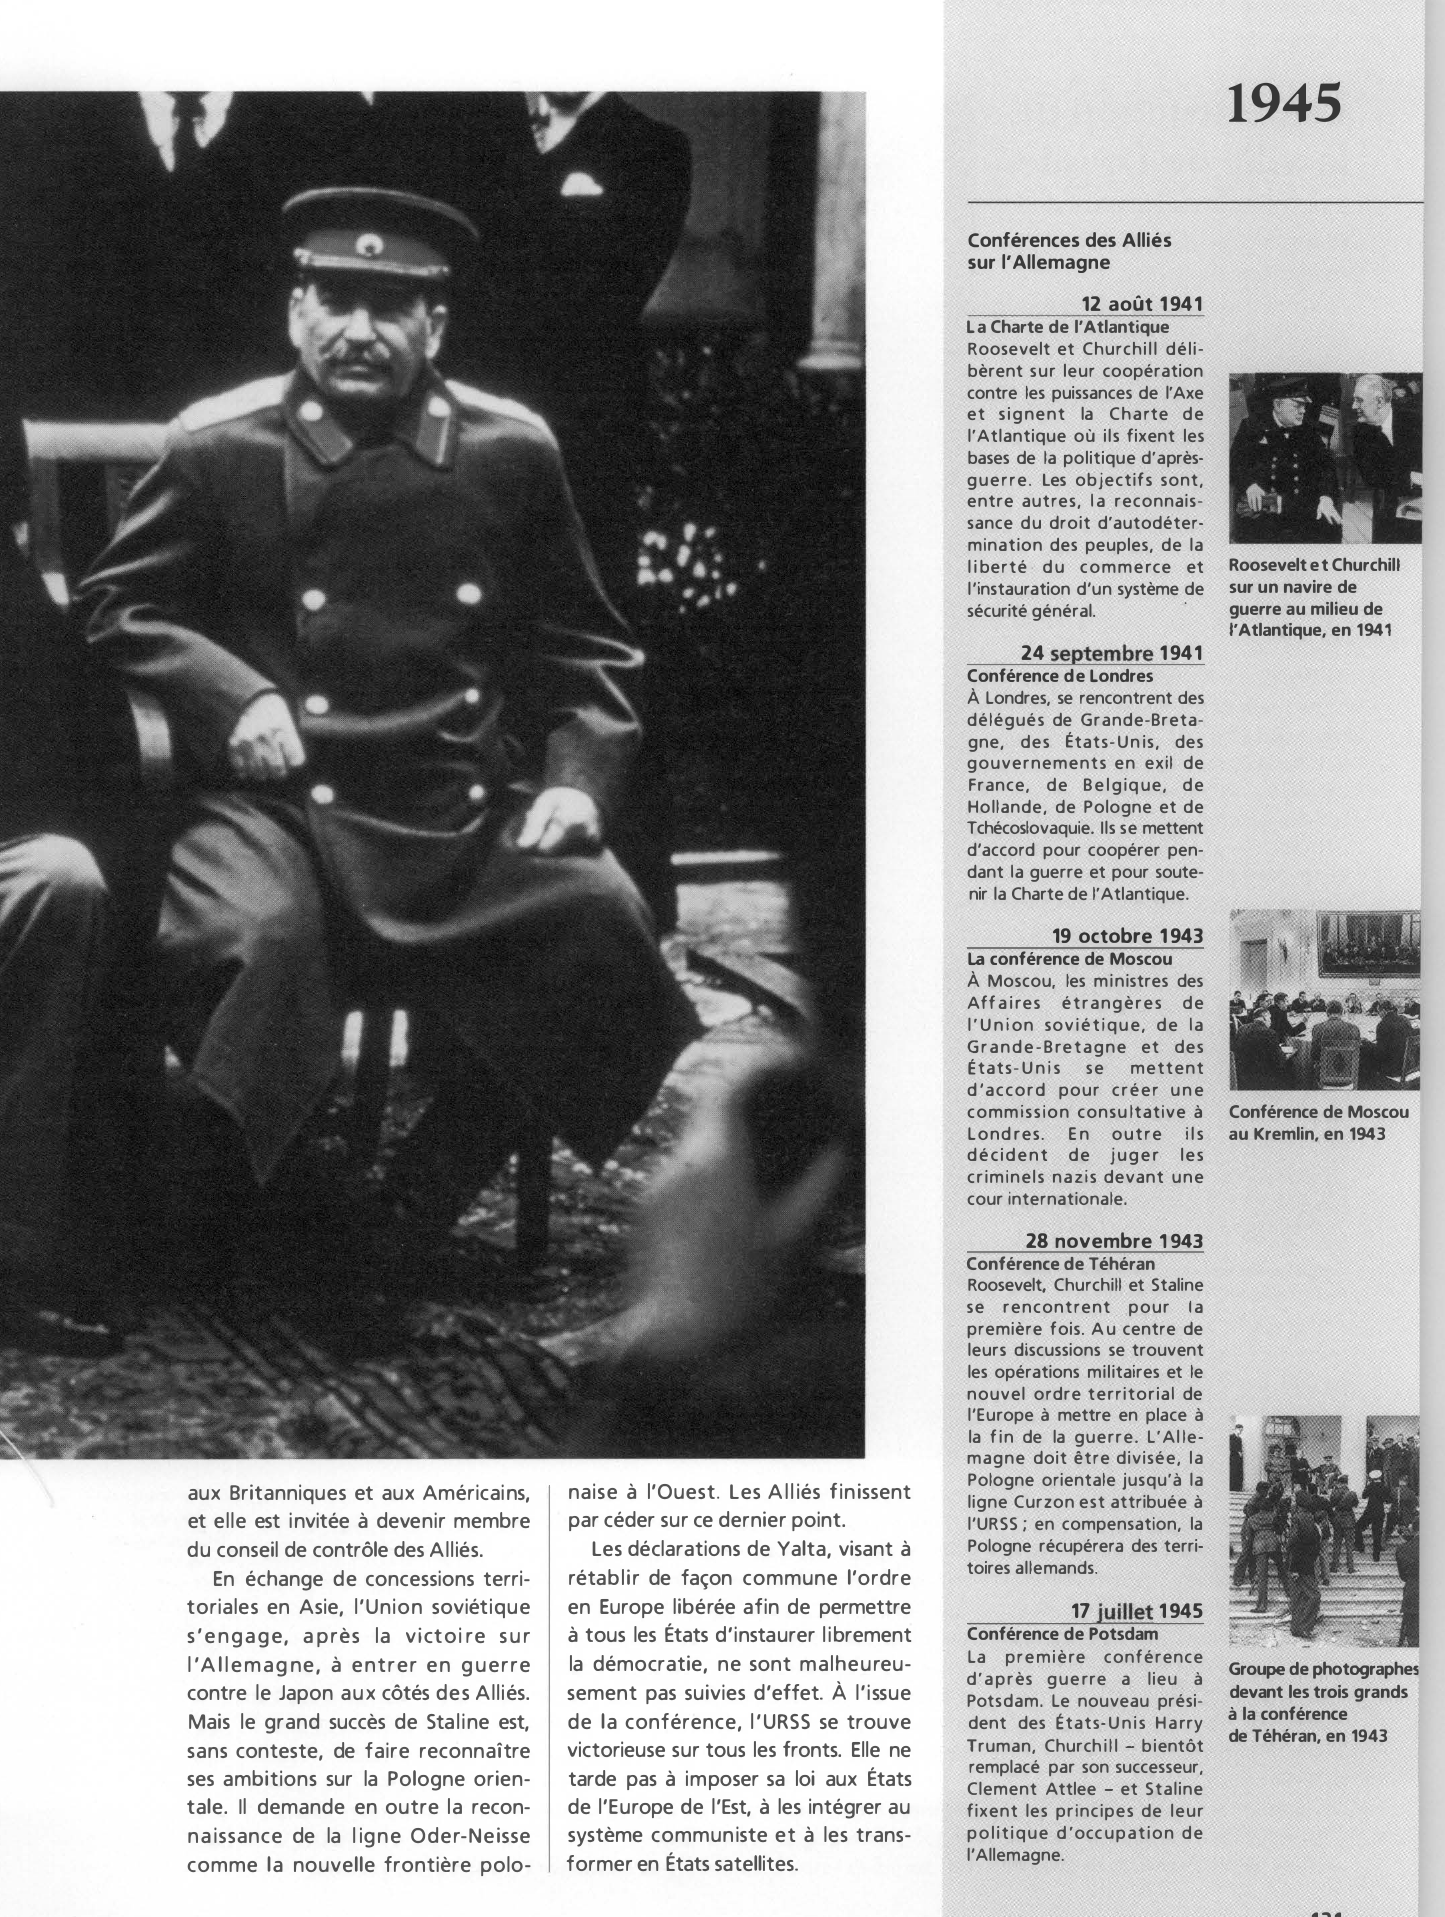 Prévisualisation du document La conférence de Yalta